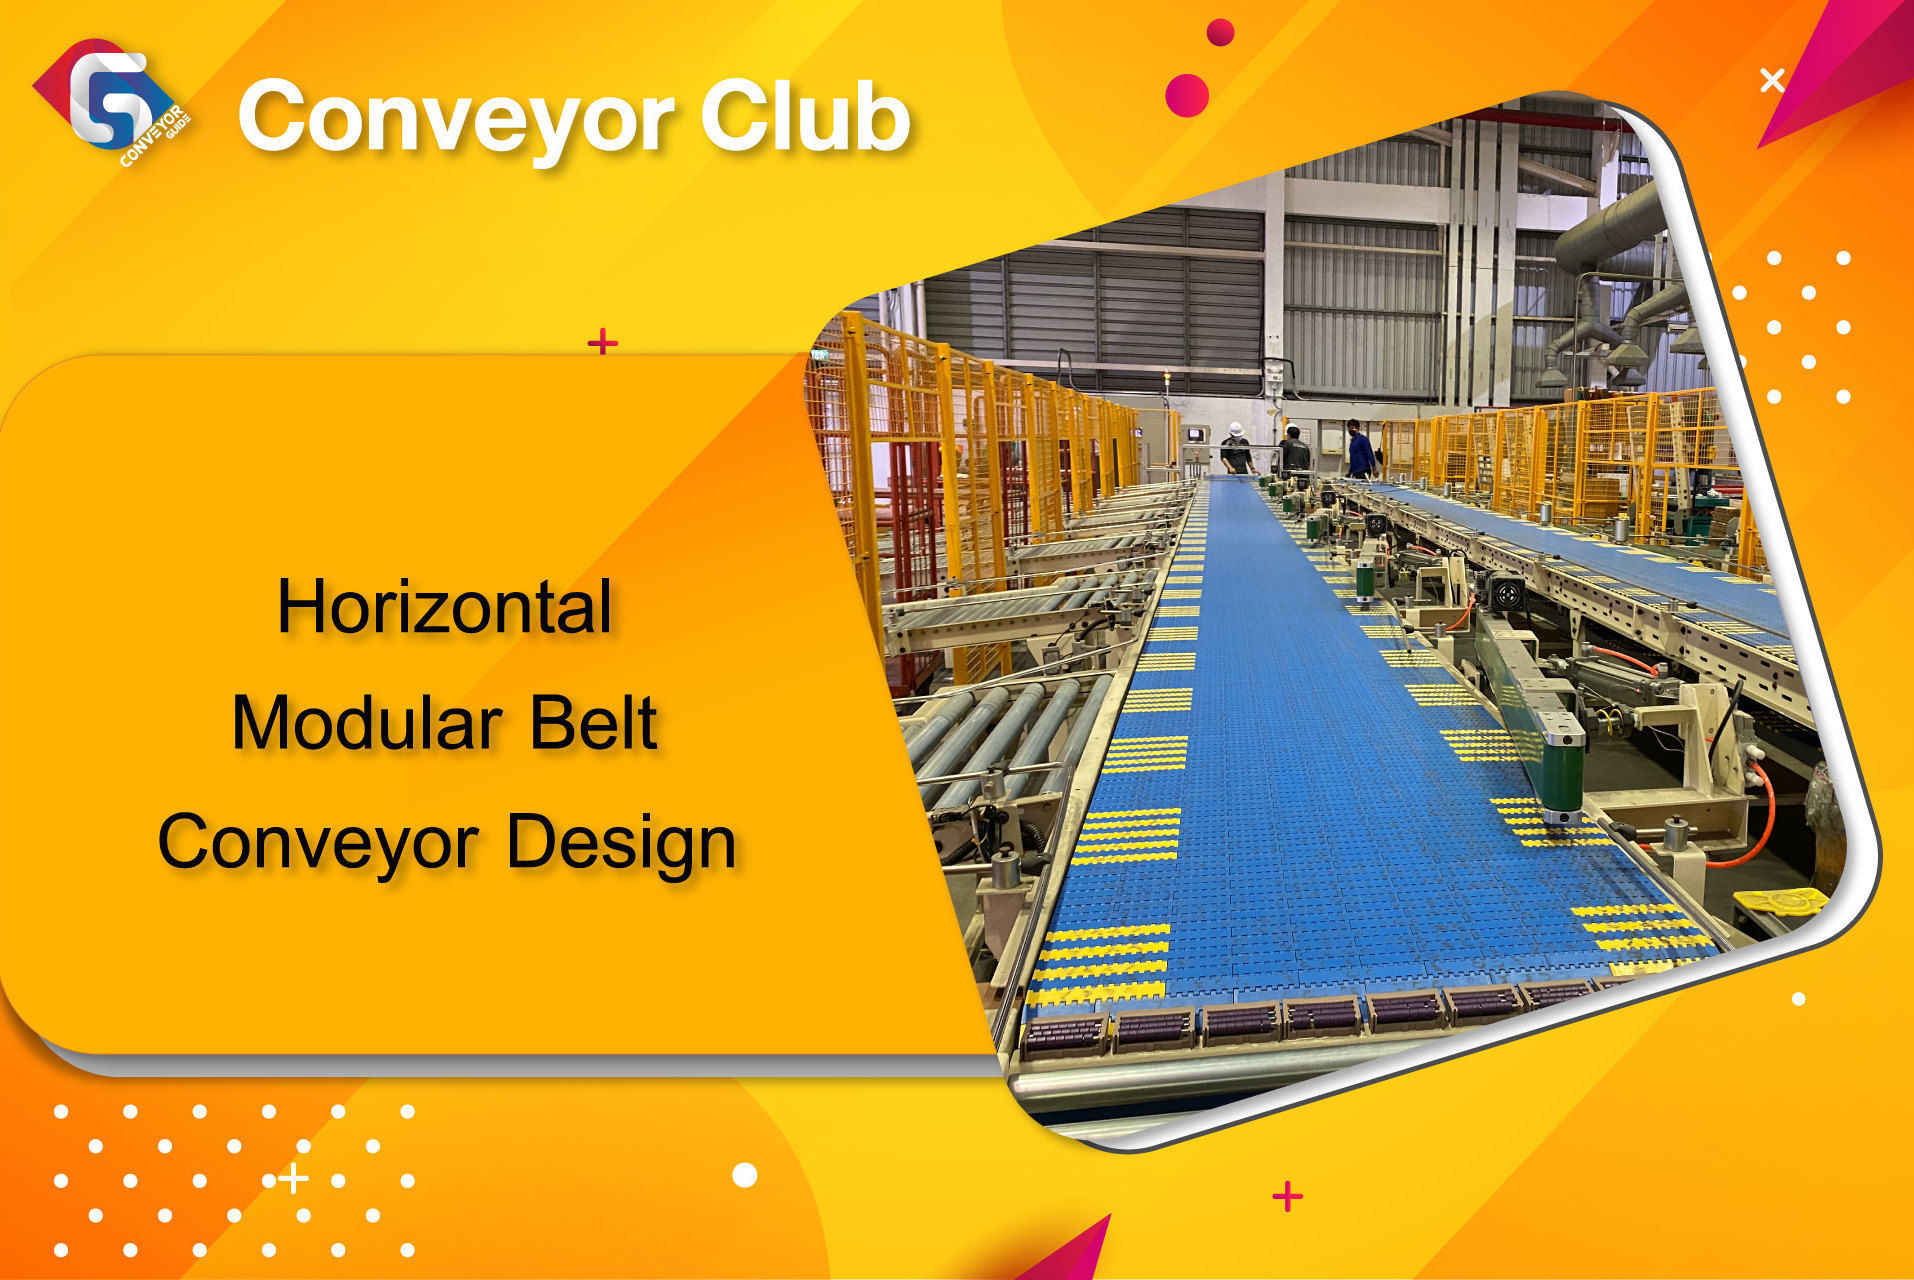 การออกแบบ Layout โครงสร้างของคอนเวเยอร์ ขึ้นอยู่กับความยาว Center to Center ของ Conveyor เราสามารถแบ่งความยาวของคอนเวเยอร์ออกเป็น 3 ขนาดคือ